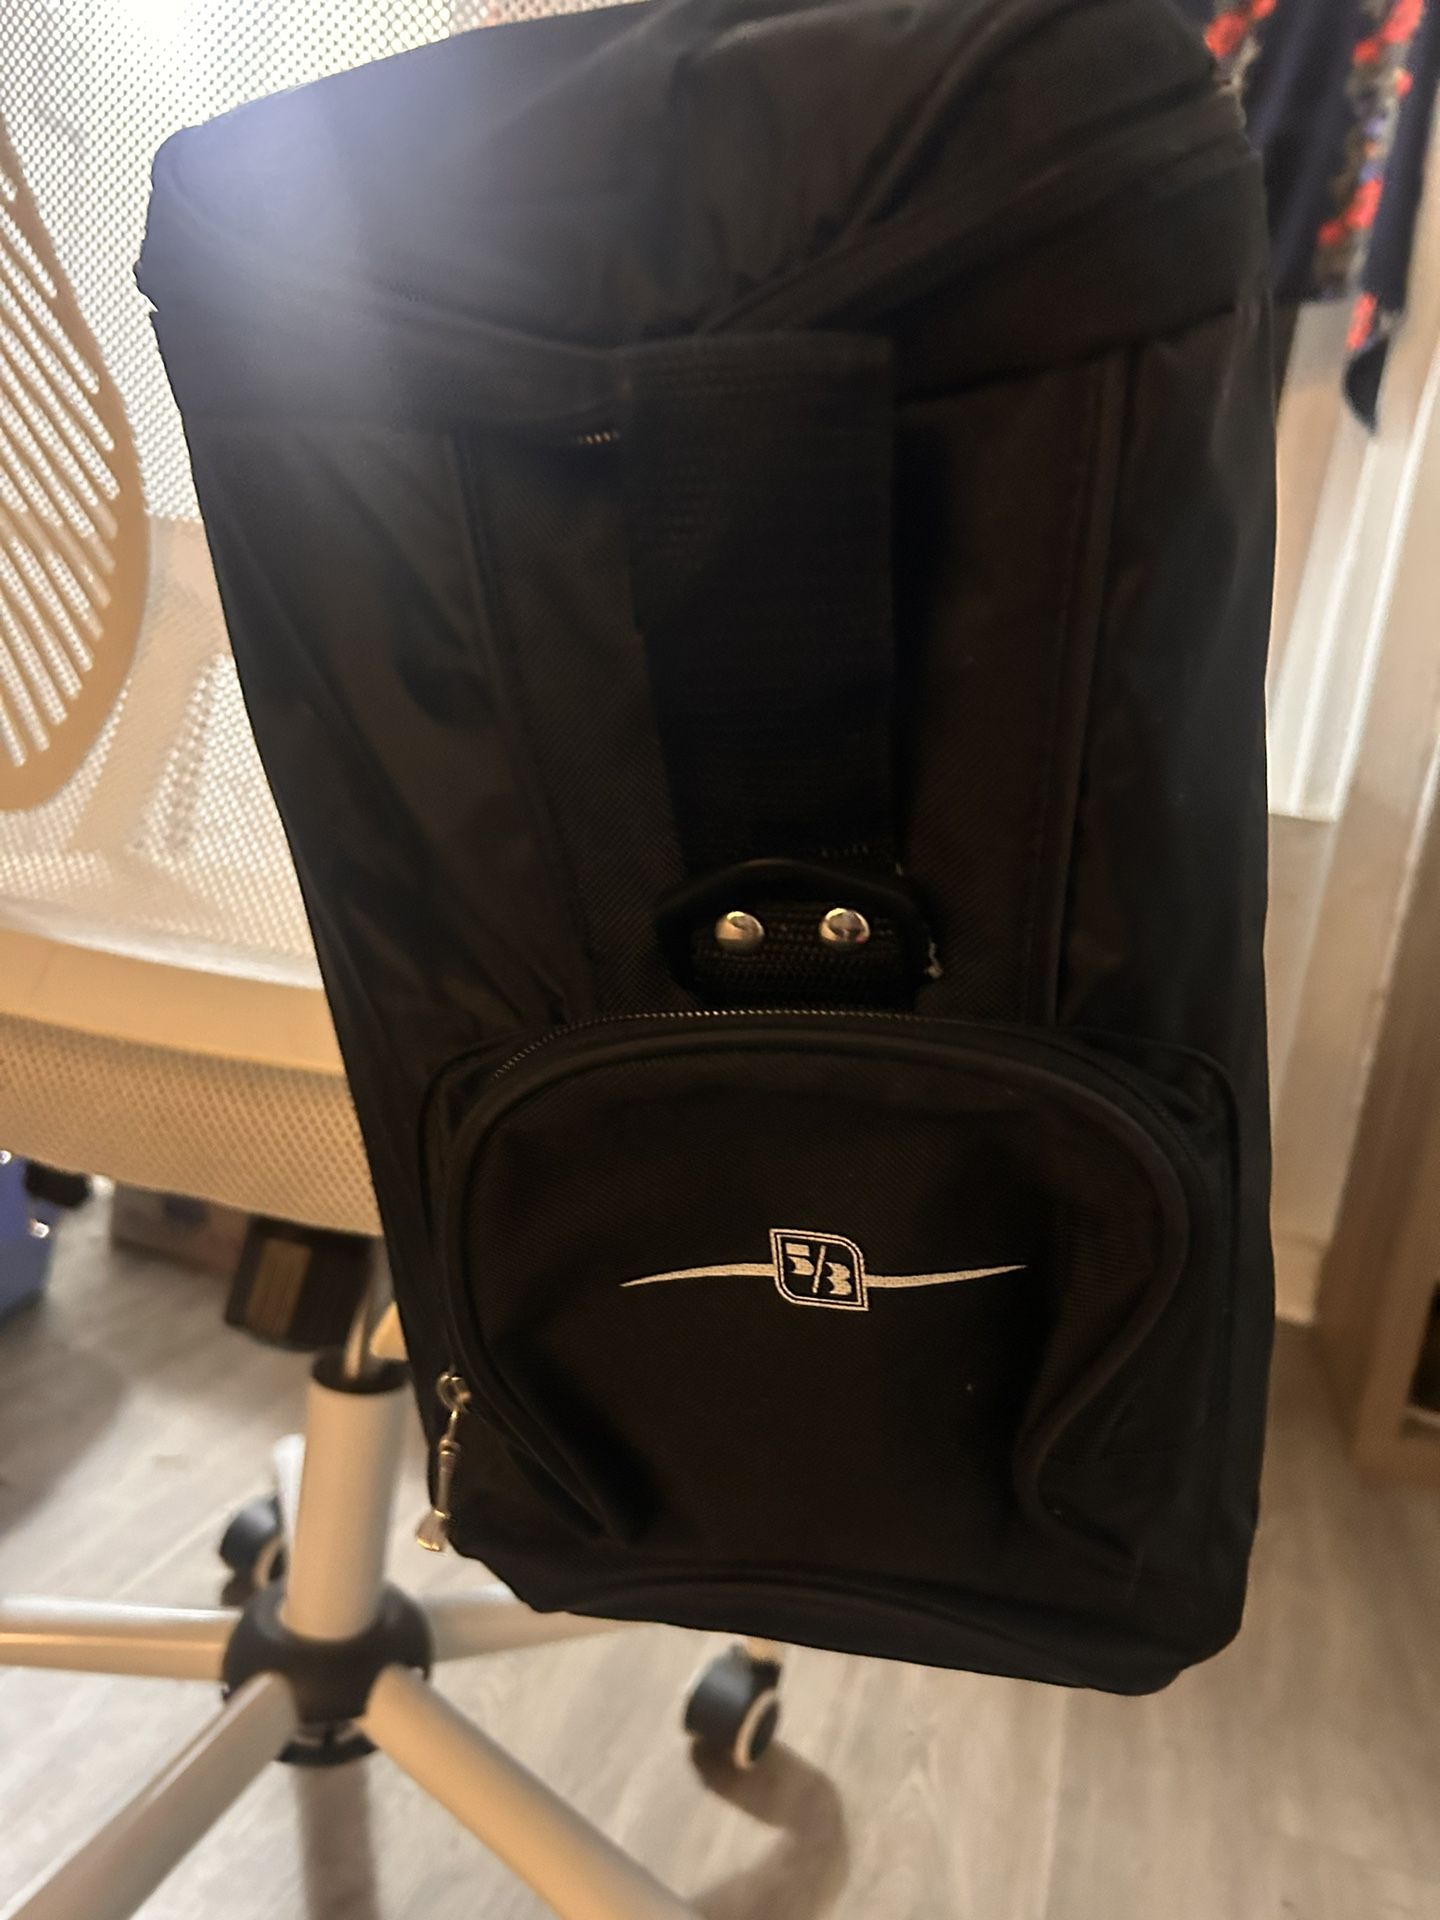 New* Bag Pack Cooler 